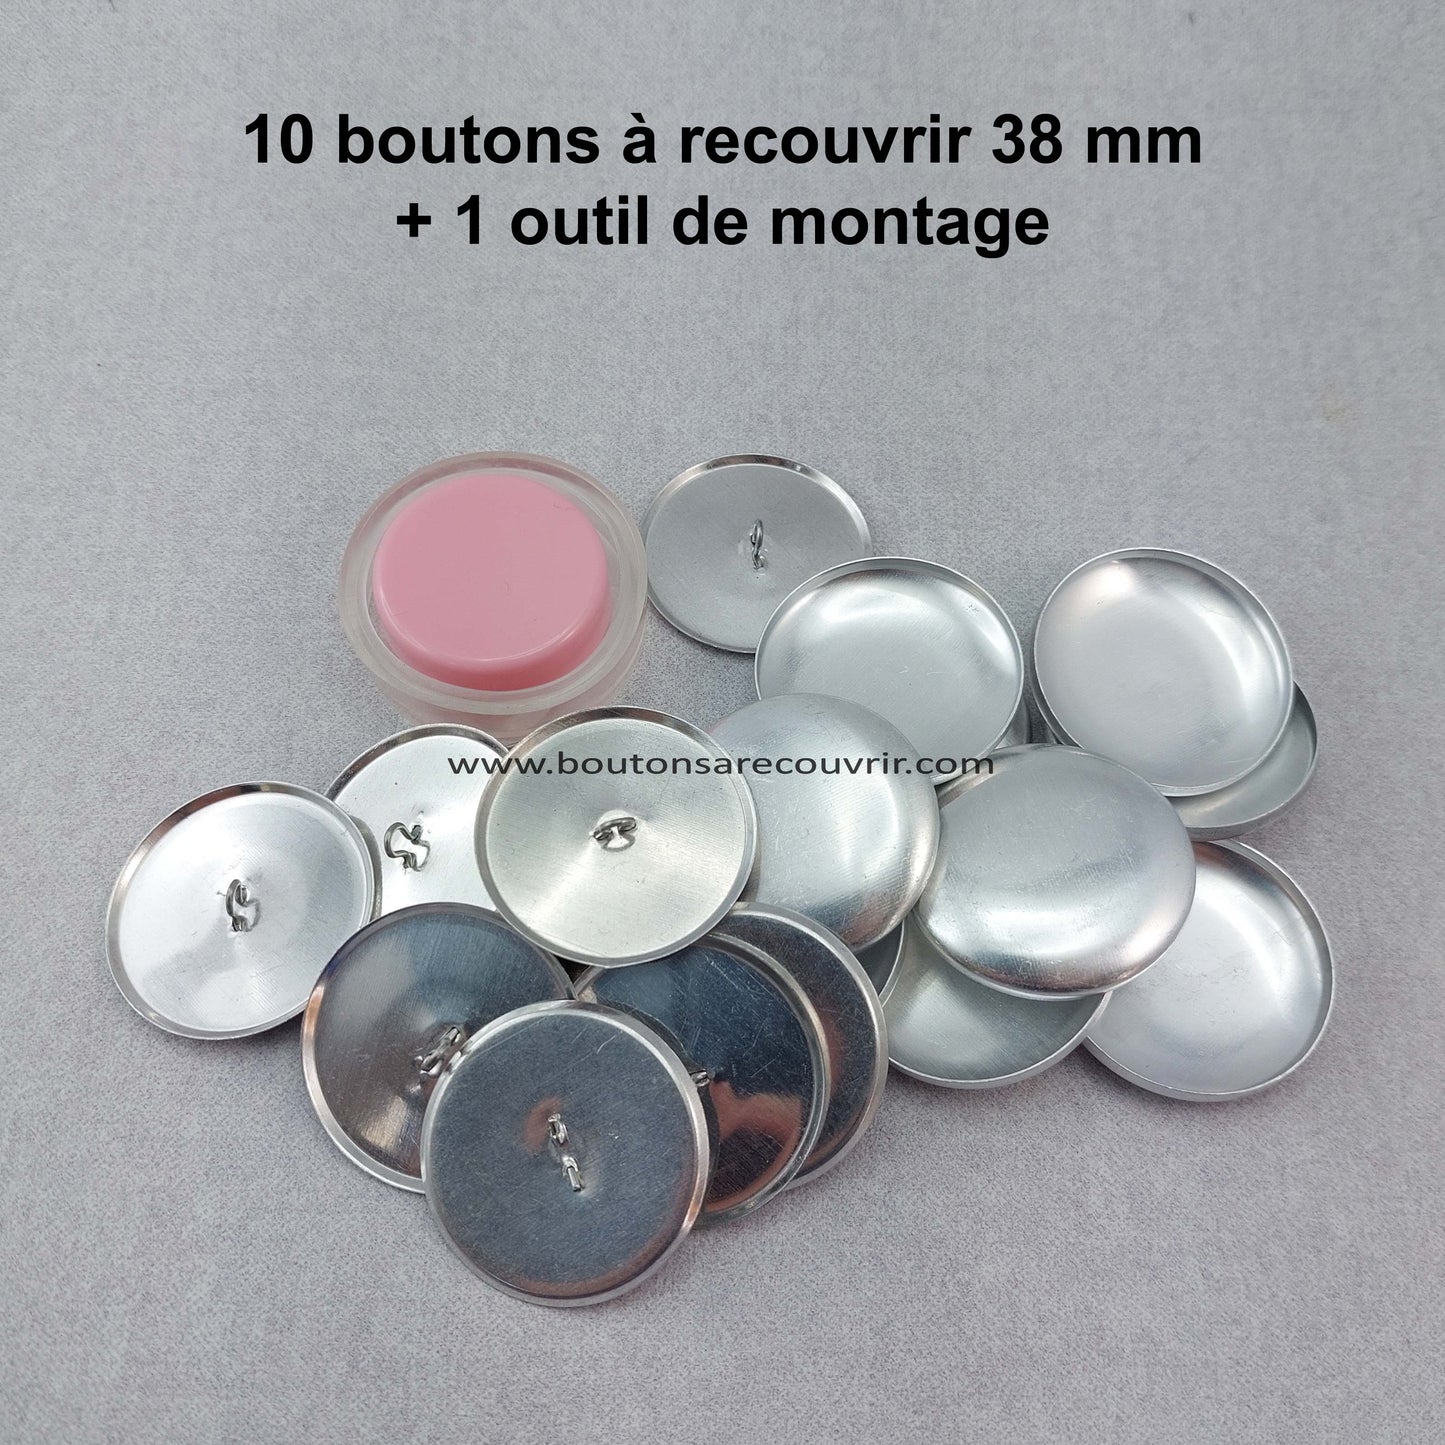 10 boutons à recouvrir 38 mm avec outil de montage